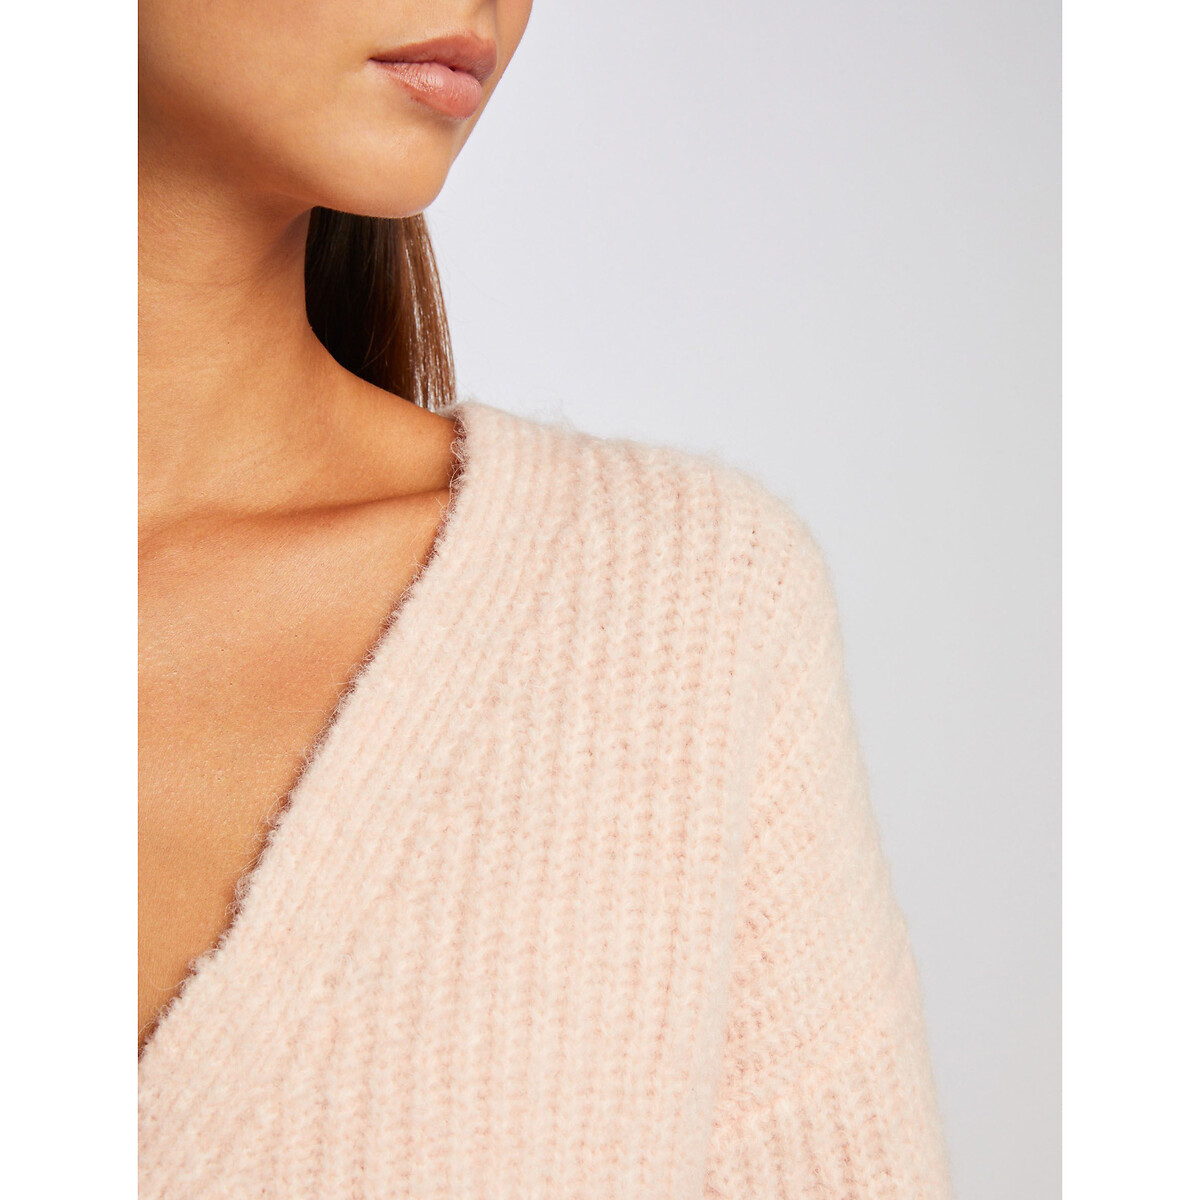 Пуловер рифленый с длинными рукавами вставка на молнии  S белый LaRedoute, размер S - фото 3